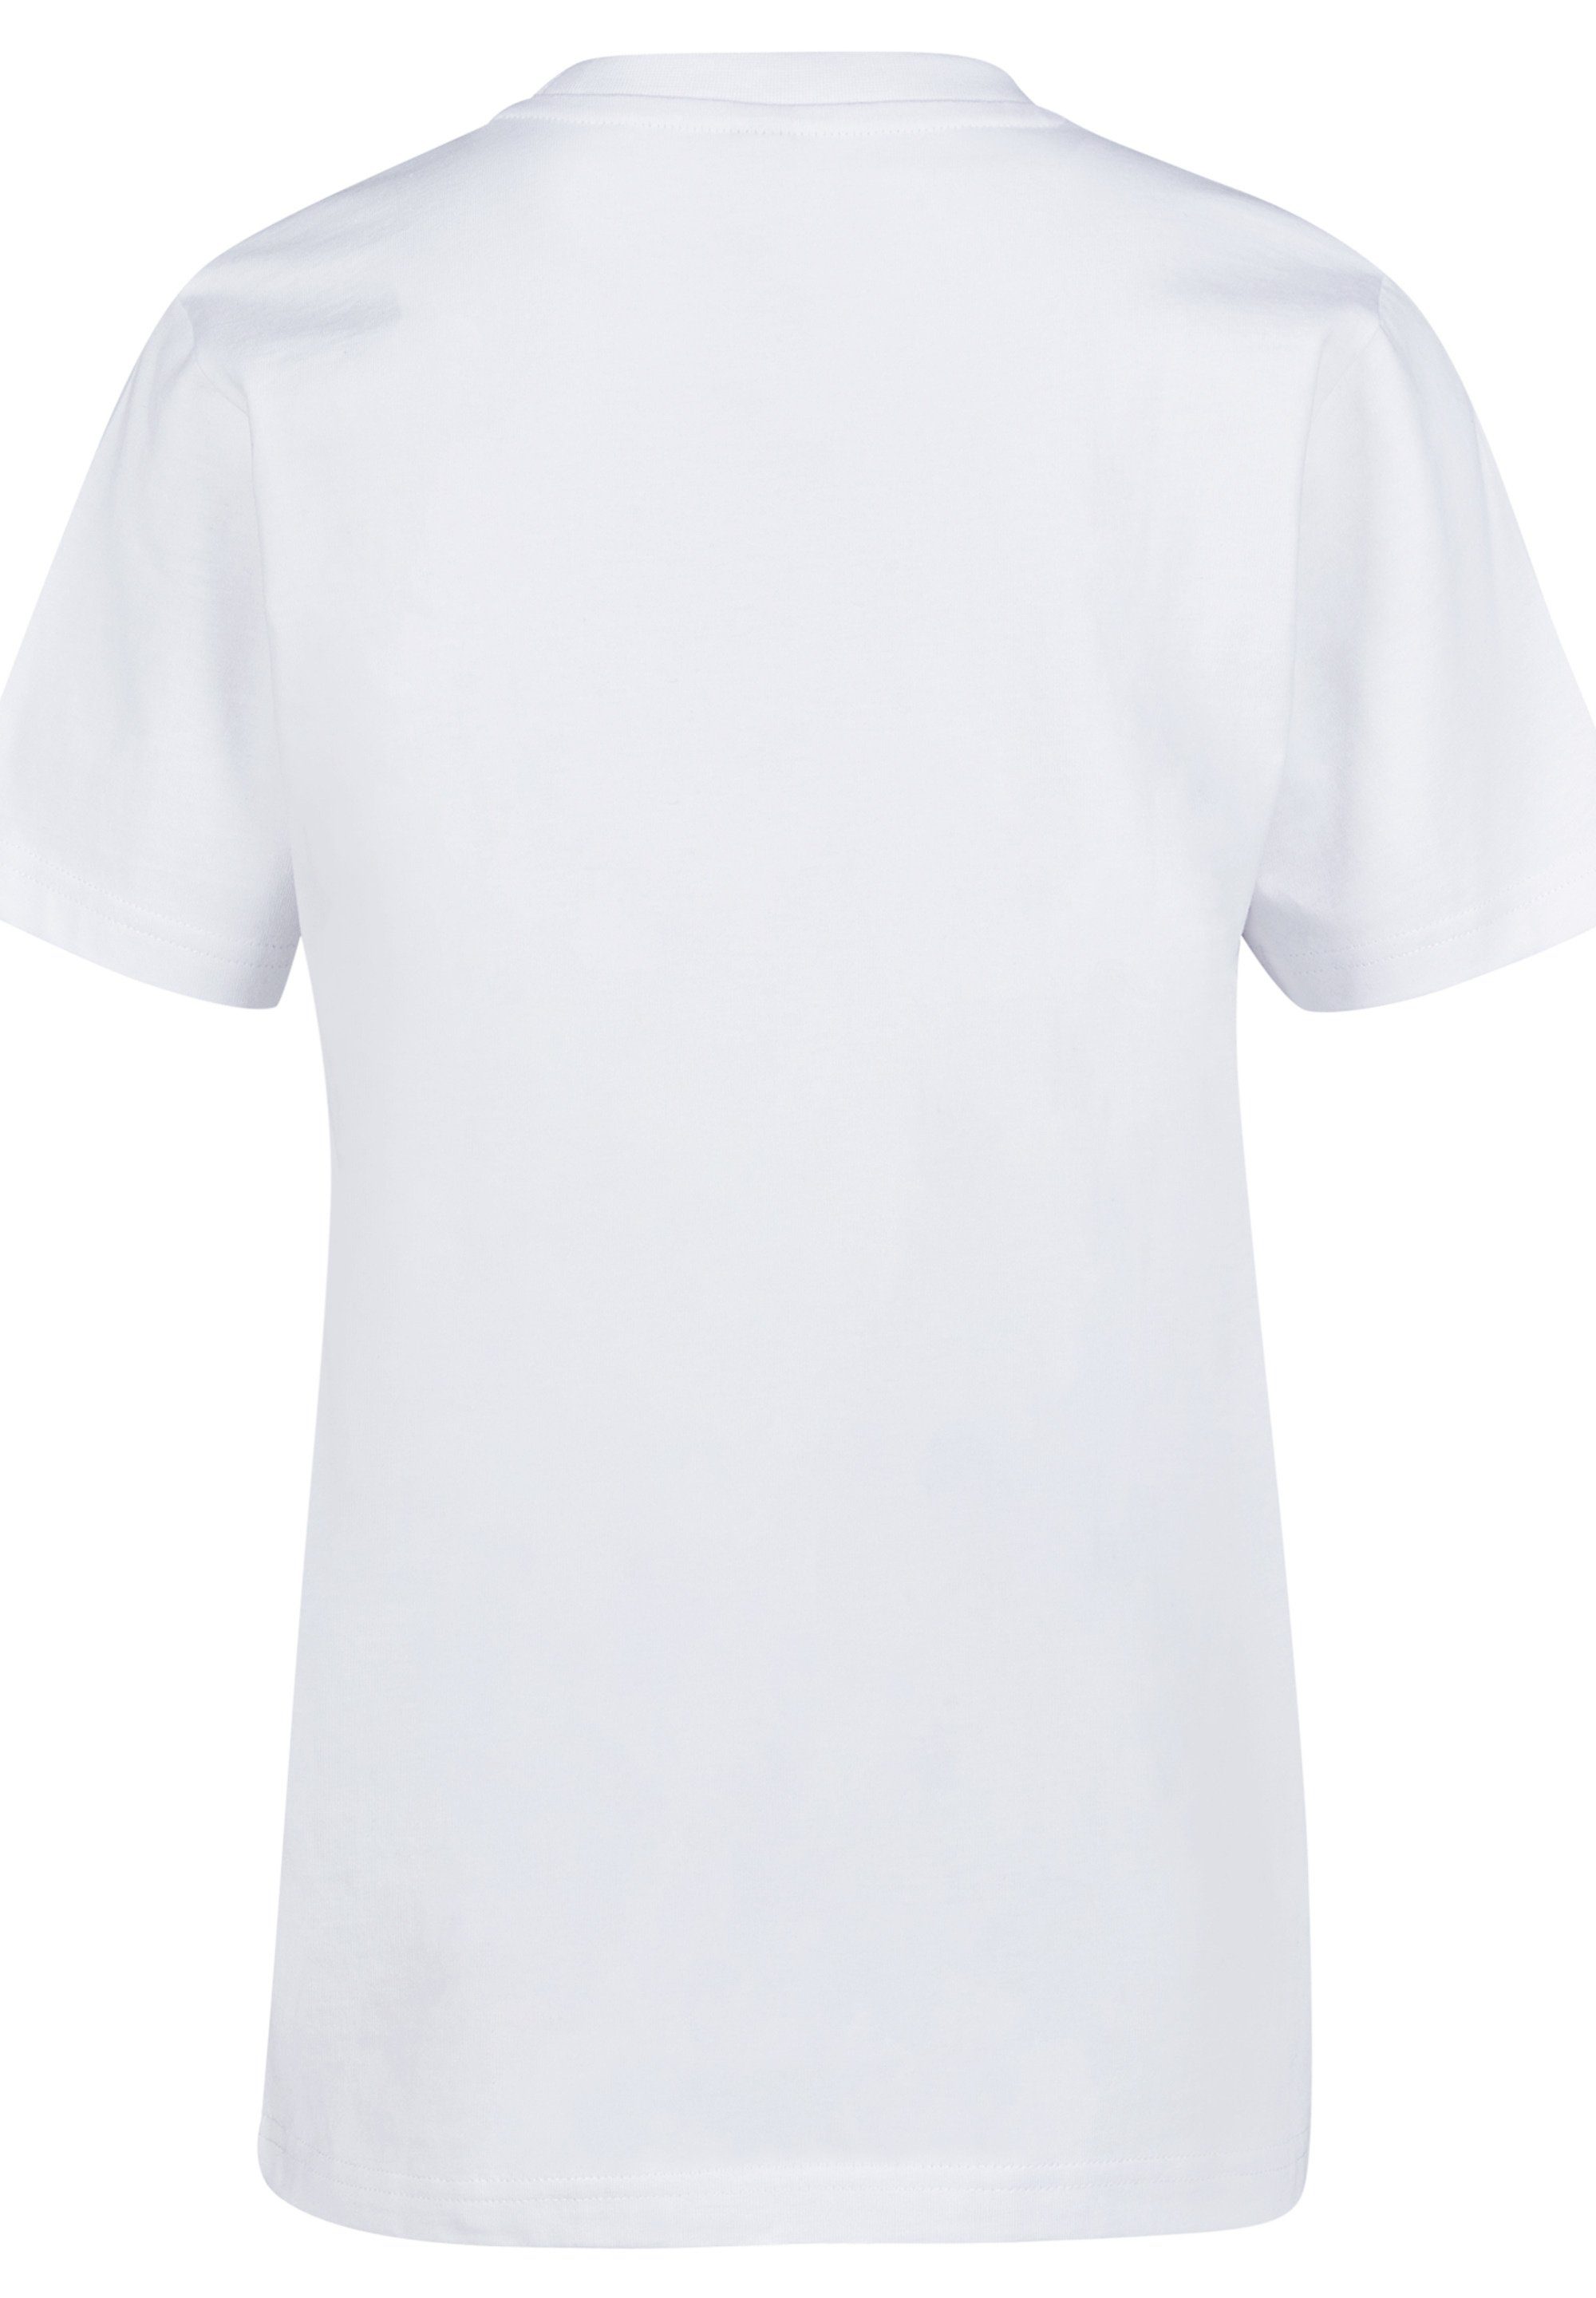 F4NT4STIC T-Shirt zum Universe rundum Bequemer Print, wohlfühlen Marvel Schnitt